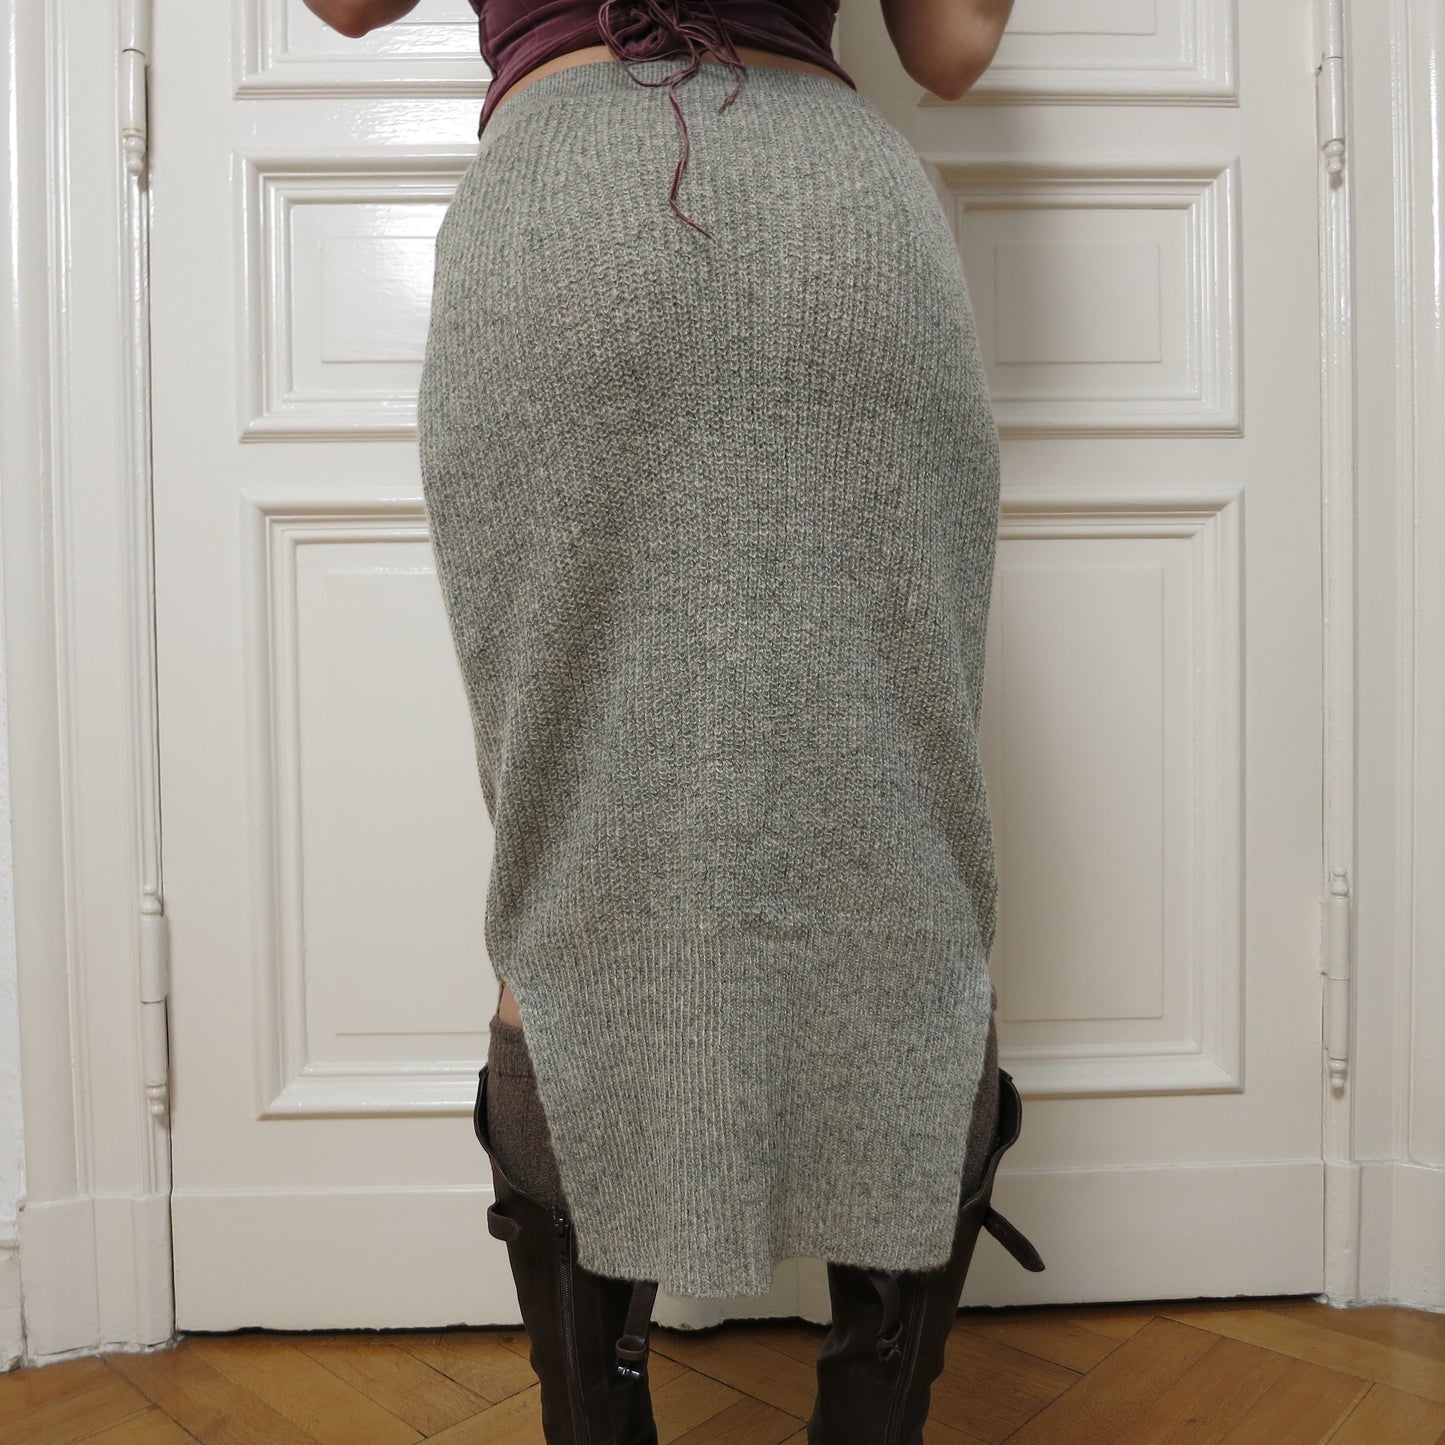 Goa knit skirt